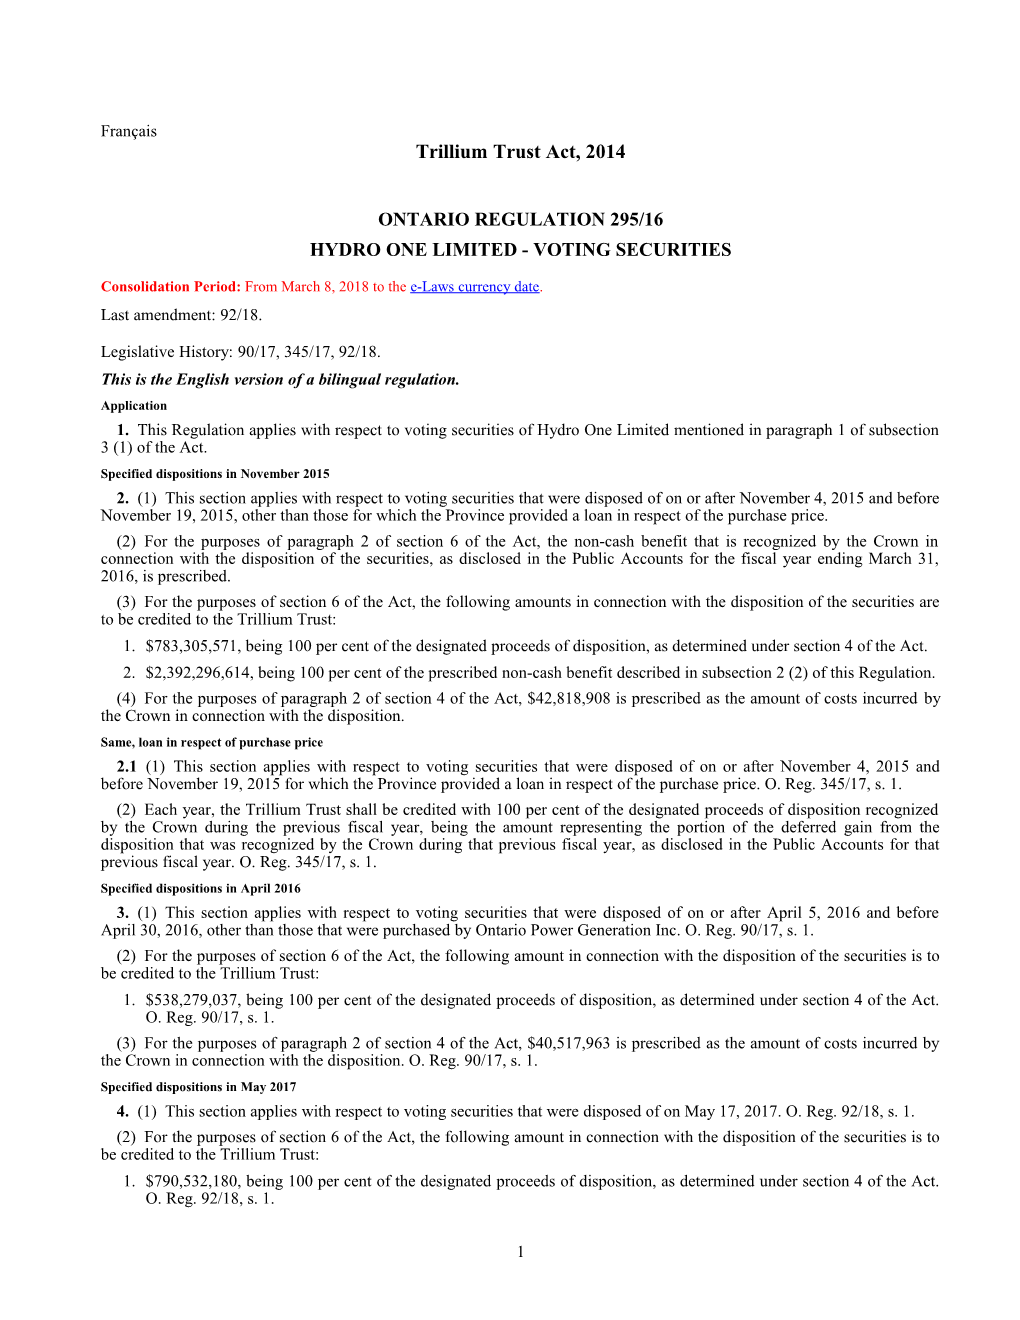 Trillium Trust Act, 2014 - O. Reg. 295/16